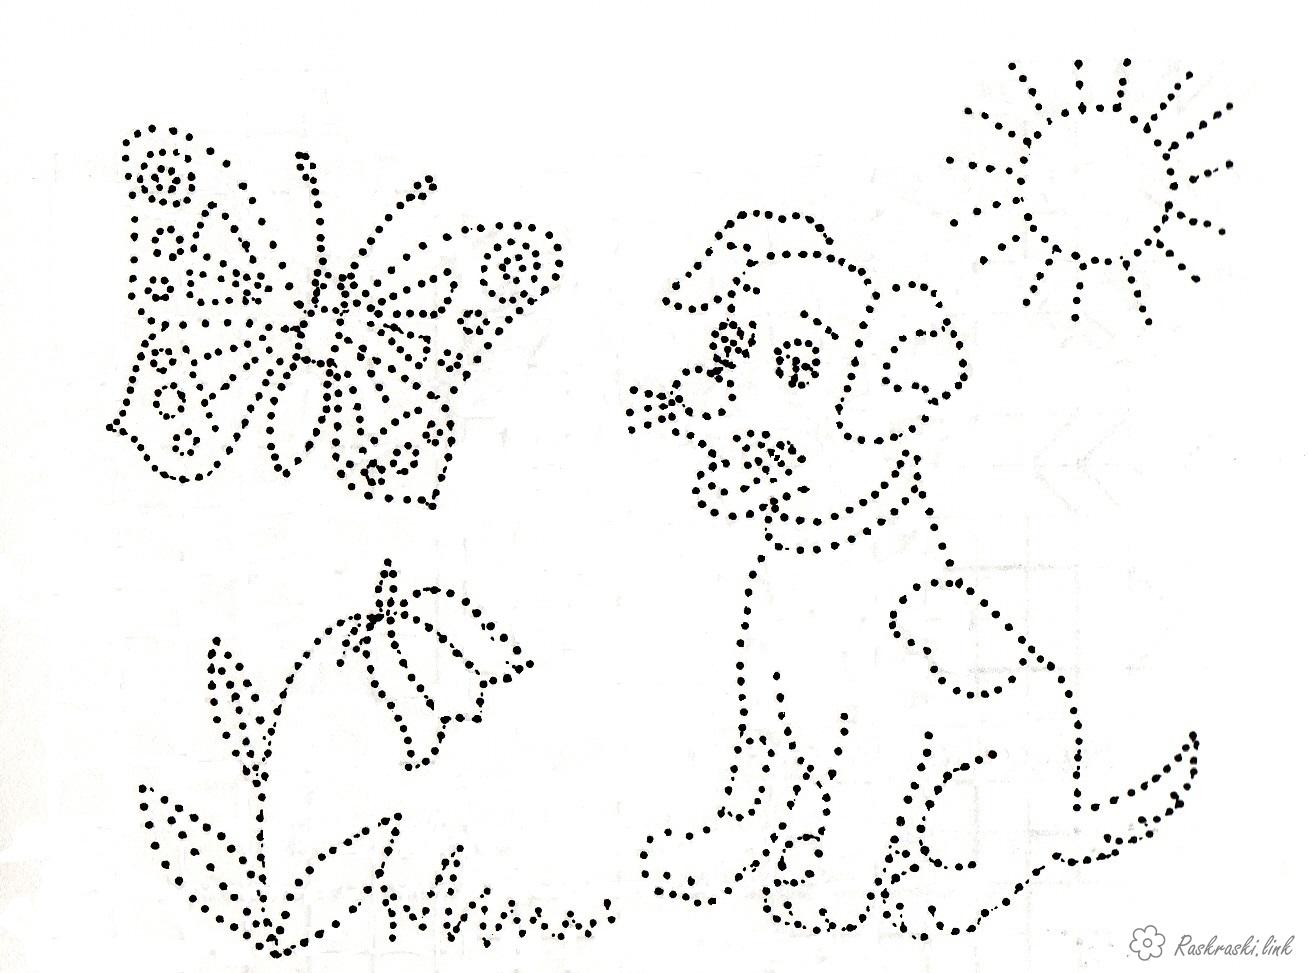  раскраски по точкам для детей               раскраски на тему рисуем по точкам для мальчиков и девочек. Познавательные раскраски по точкам для детей. Раскраски для детей                   